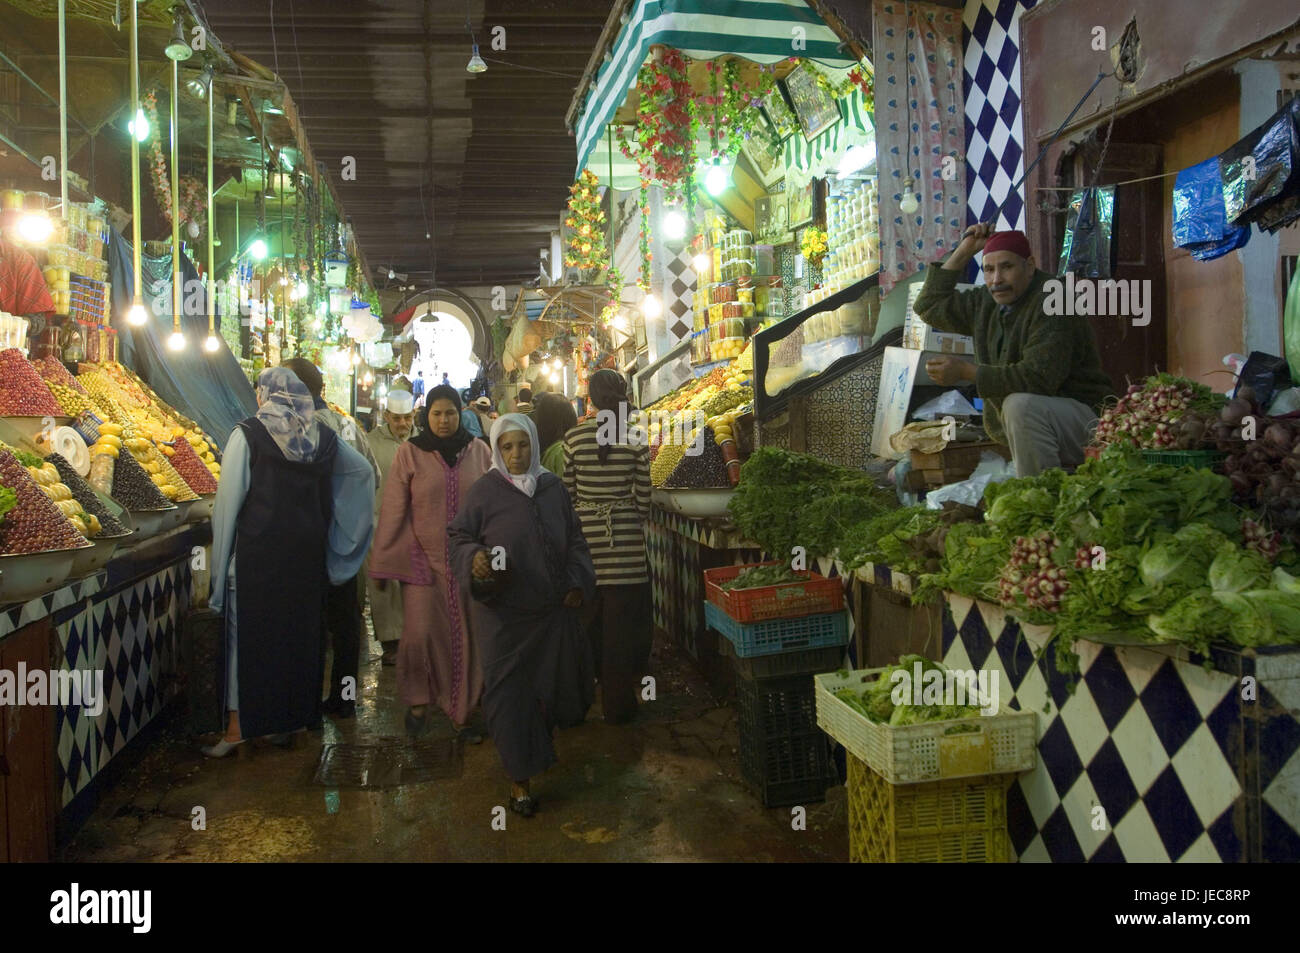 Marruecos, Meknes, el mercado cubierto, vendedor, verduras, frutas, mujer, ningún modelo de liberación, África, África del Norte, la ciudad, los lugareños, los marroquíes, los marroquíes, velo, tradicionalmente, compras, comida, mercado, mercado de verduras, interior, iluminación, lámparas, Foto de stock